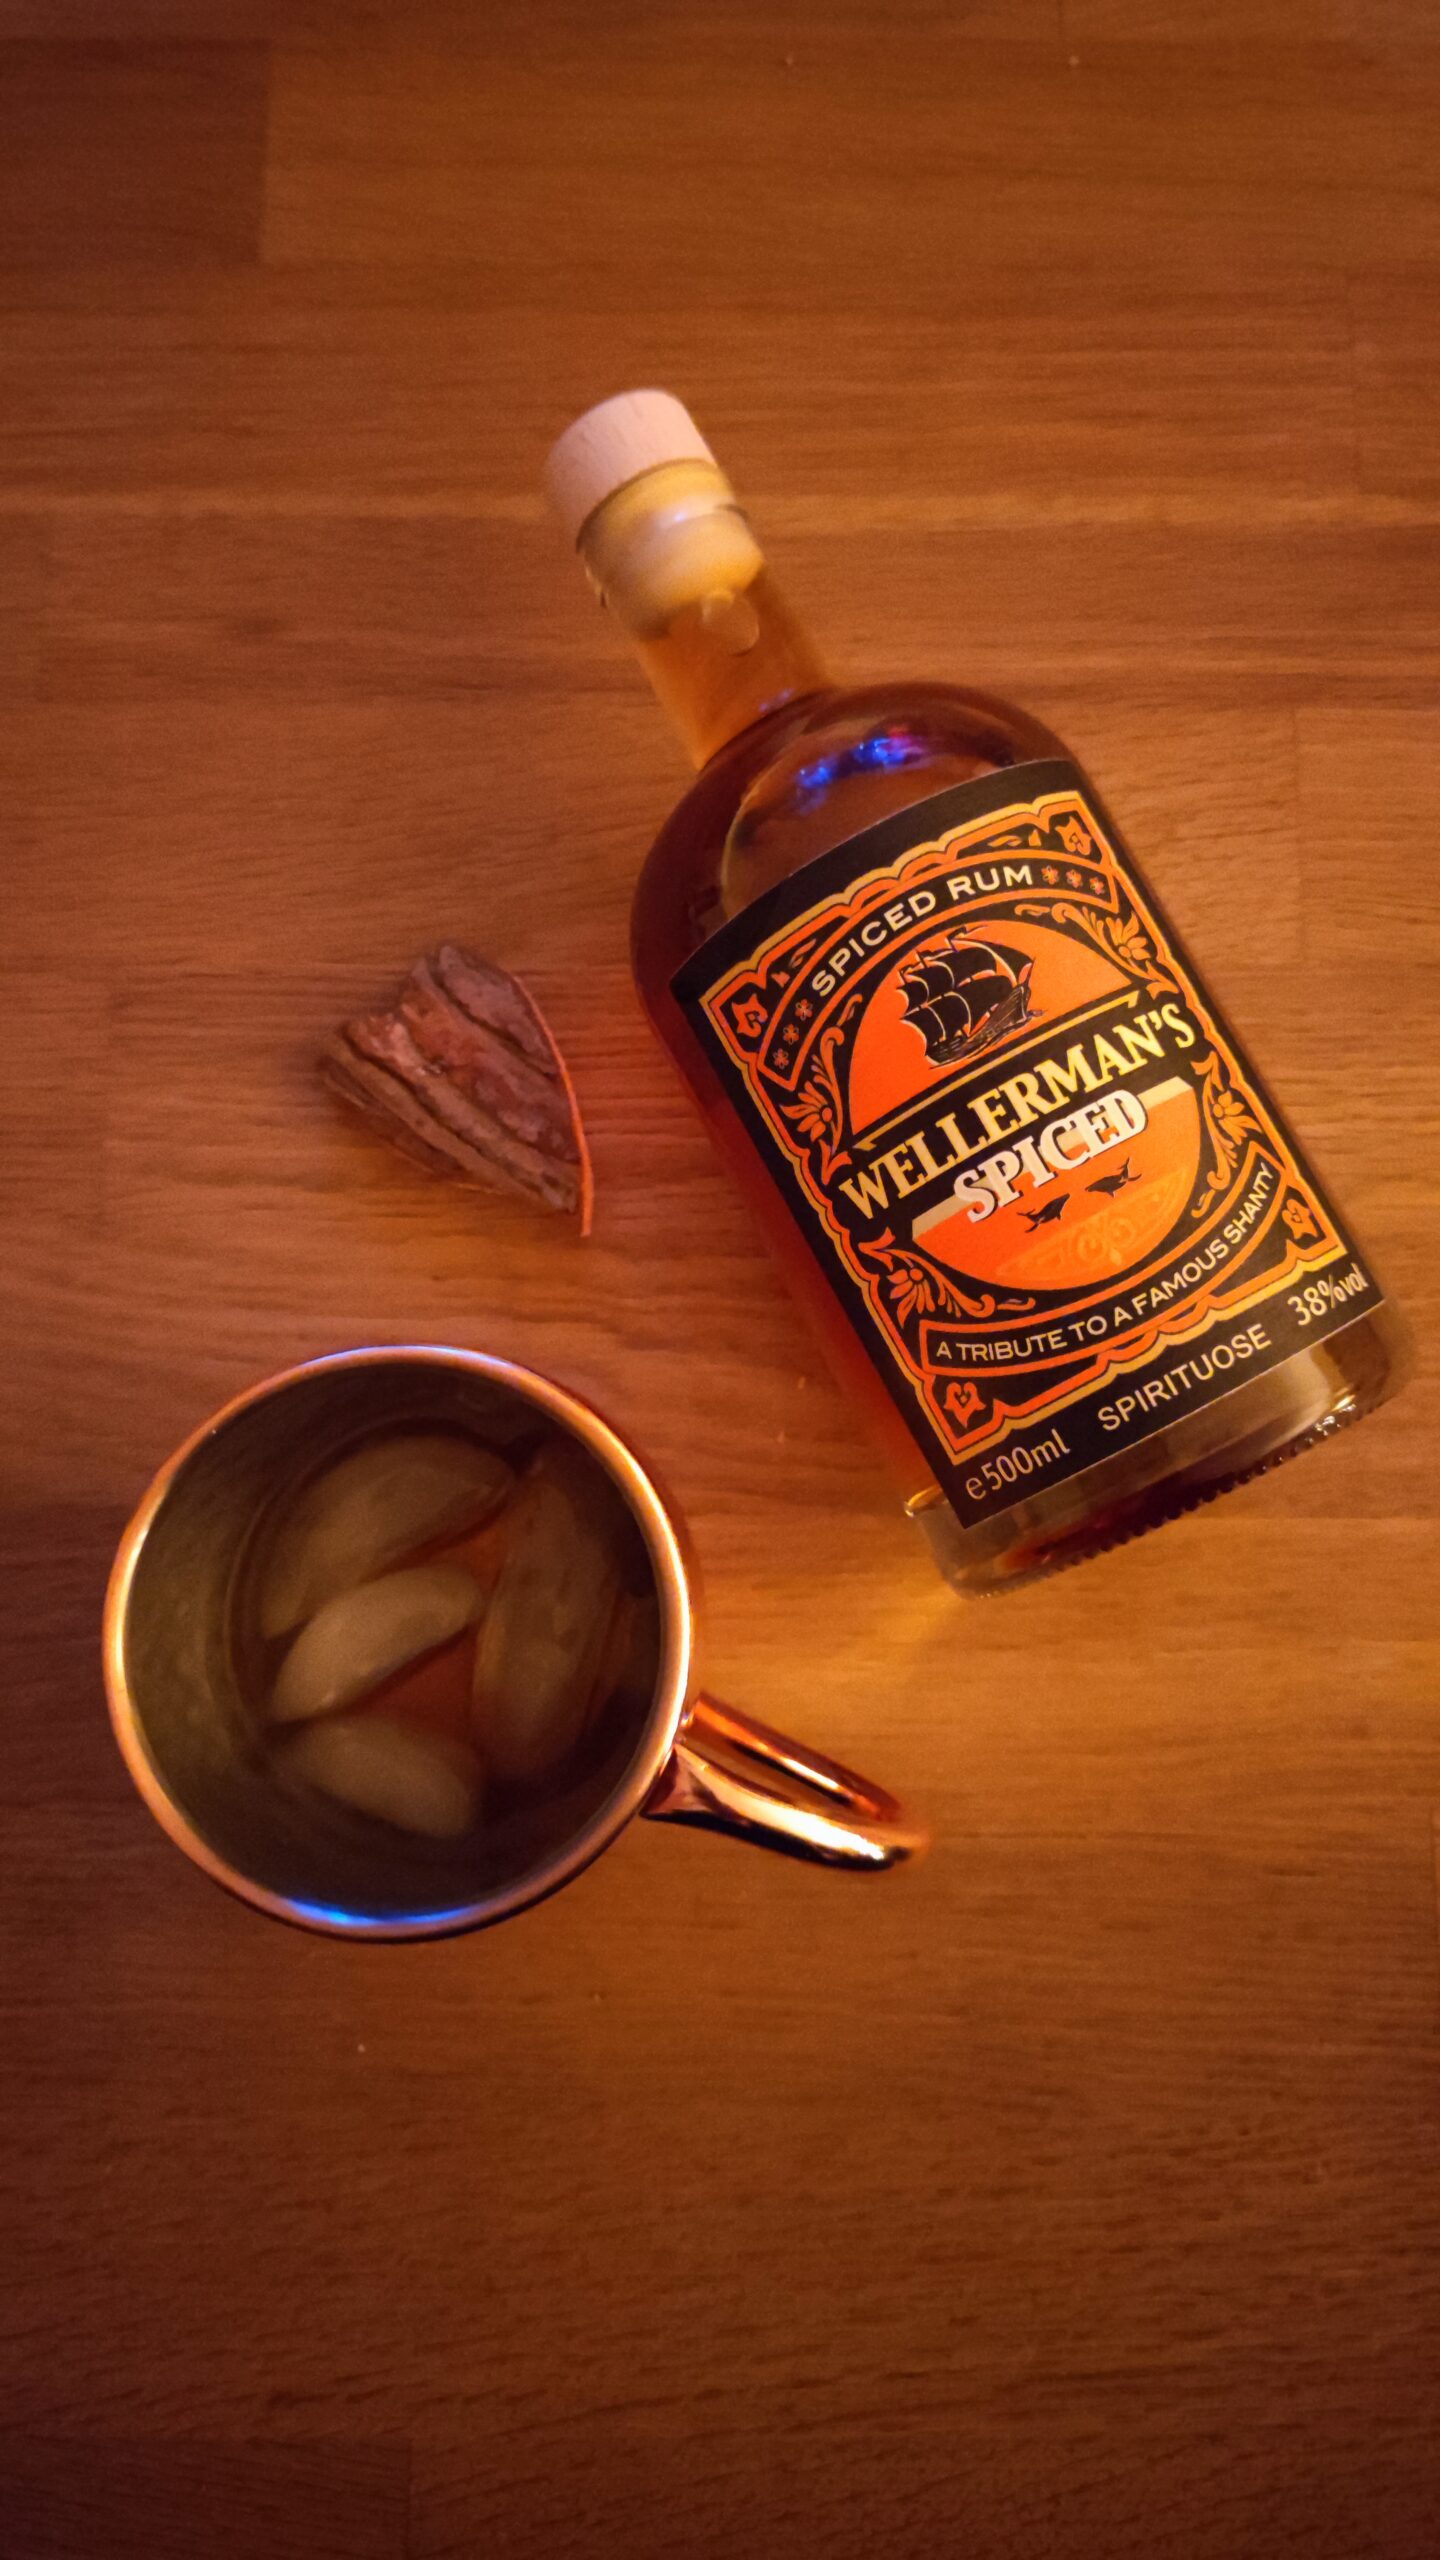 Wellerman’s Spiced Rum